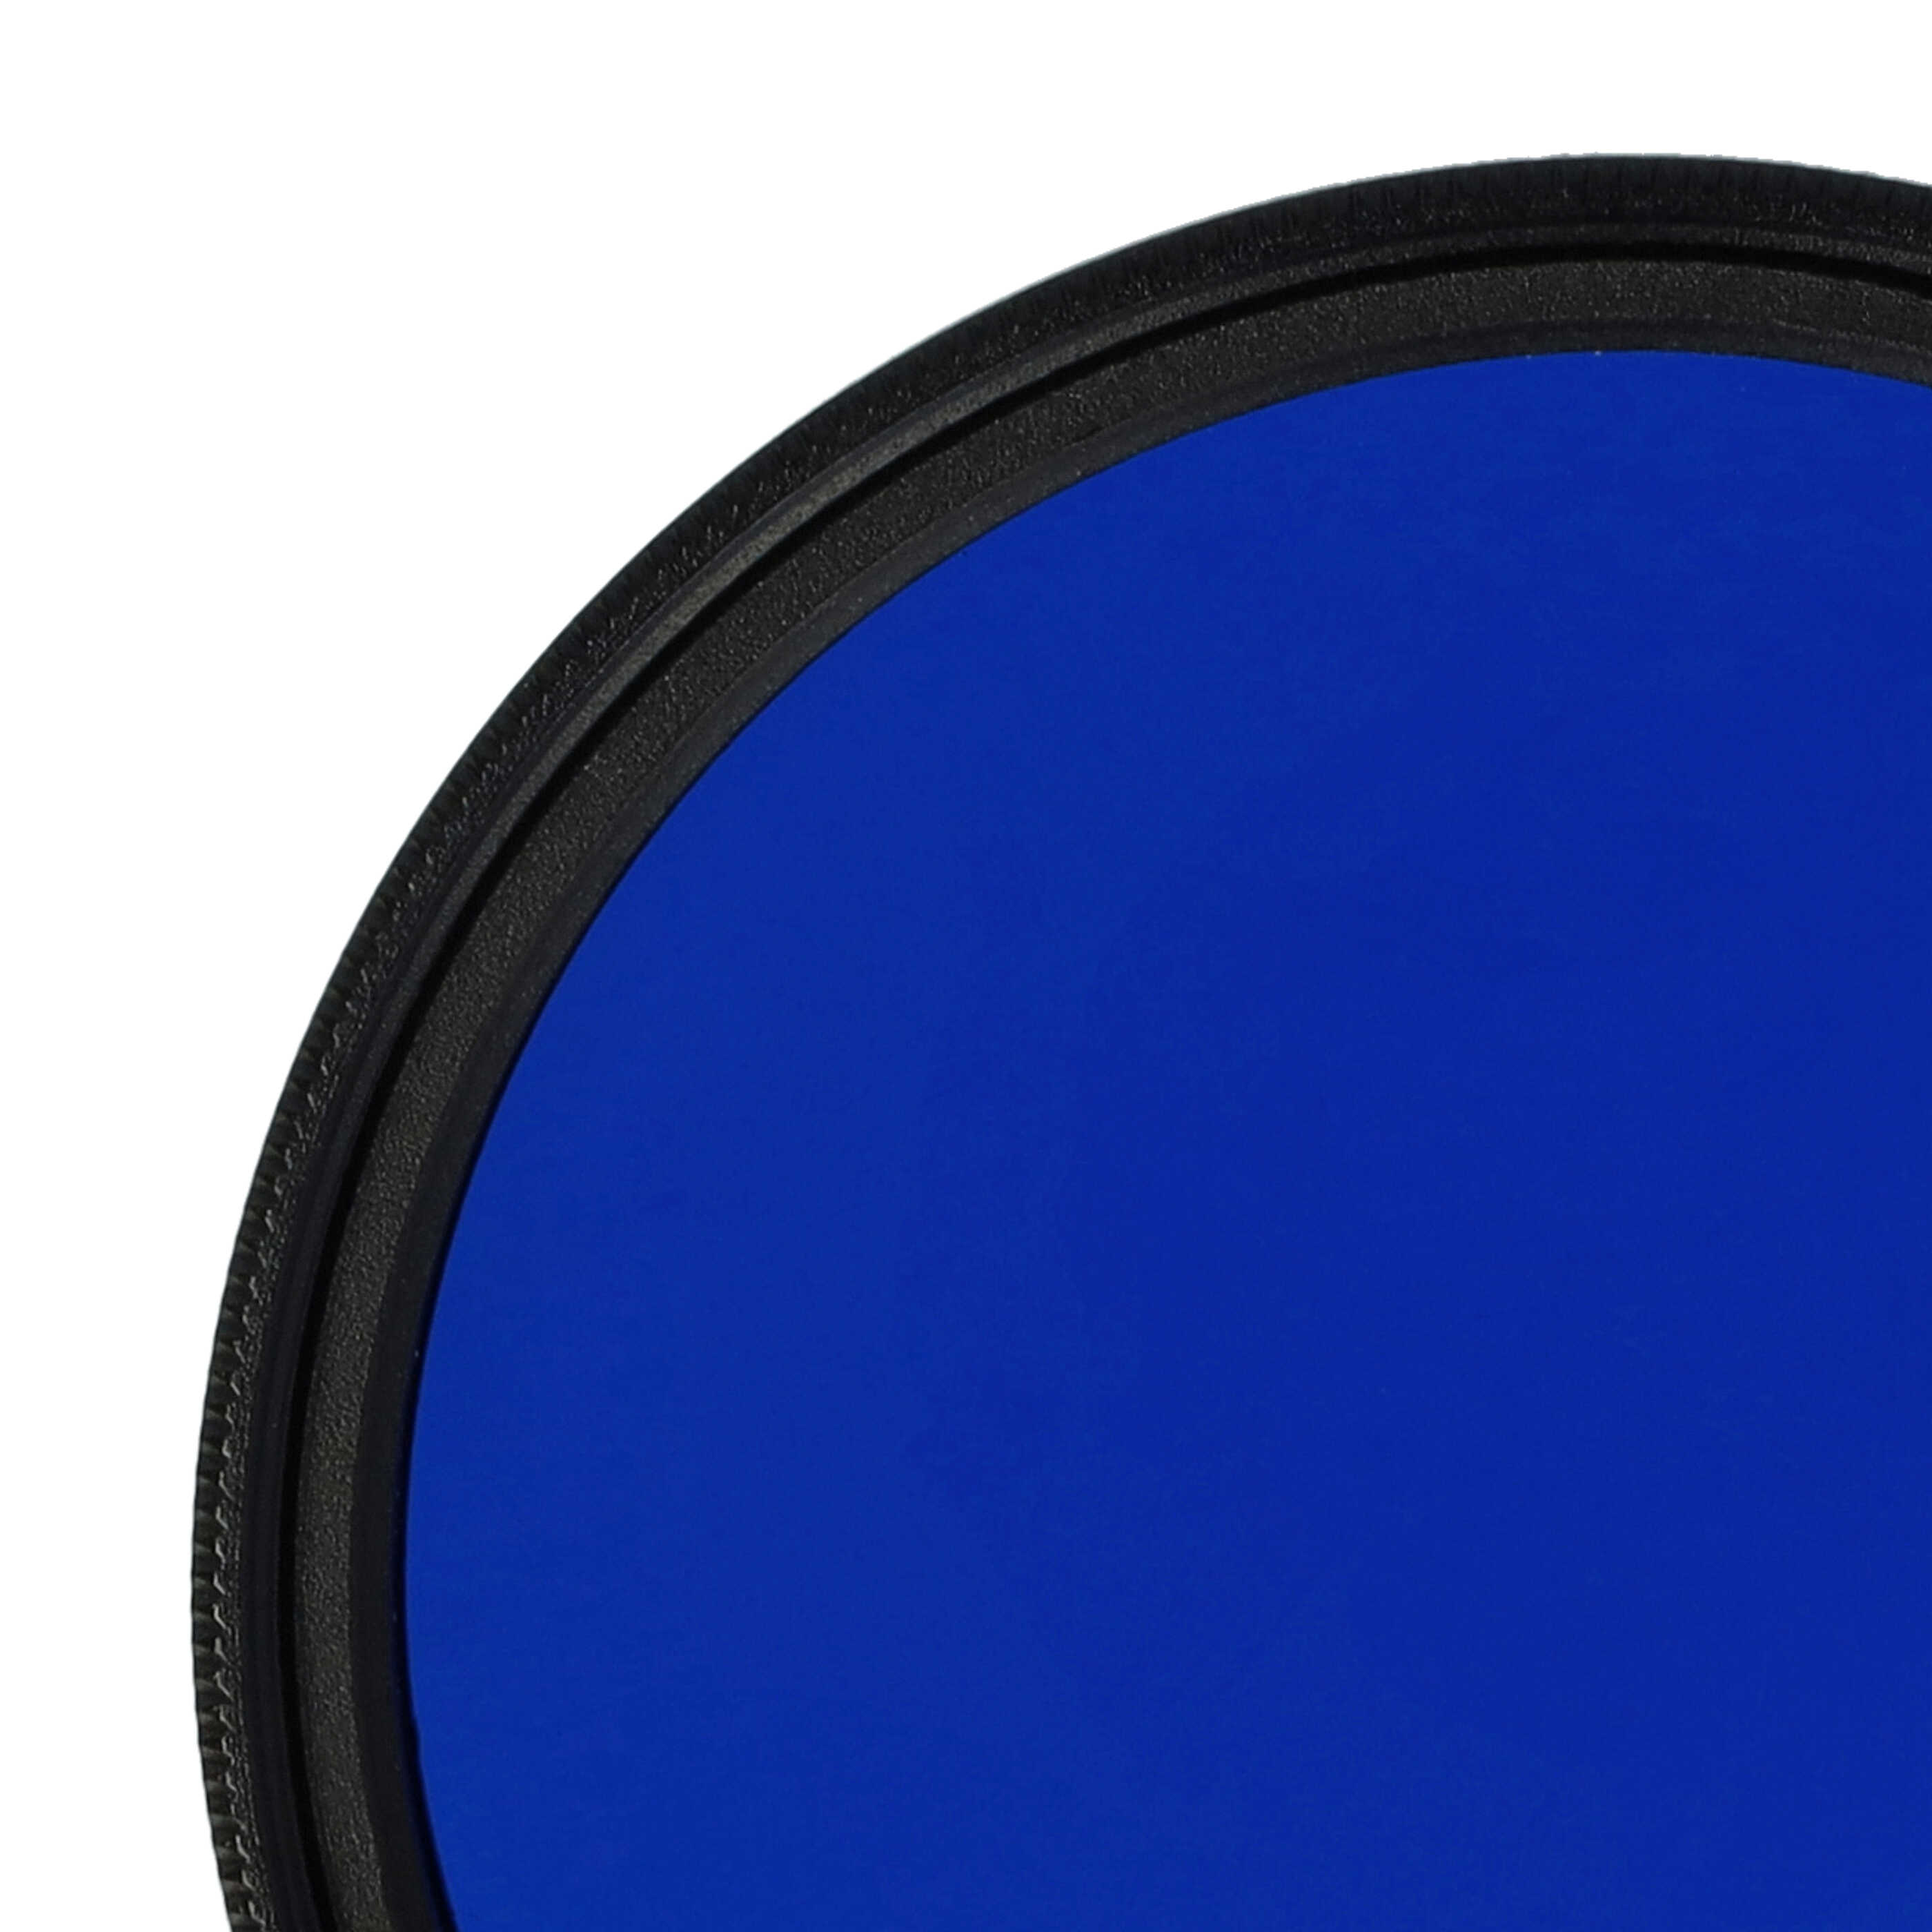 Farbfilter blau passend für Kamera Objektive mit 49 mm Filtergewinde - Blaufilter